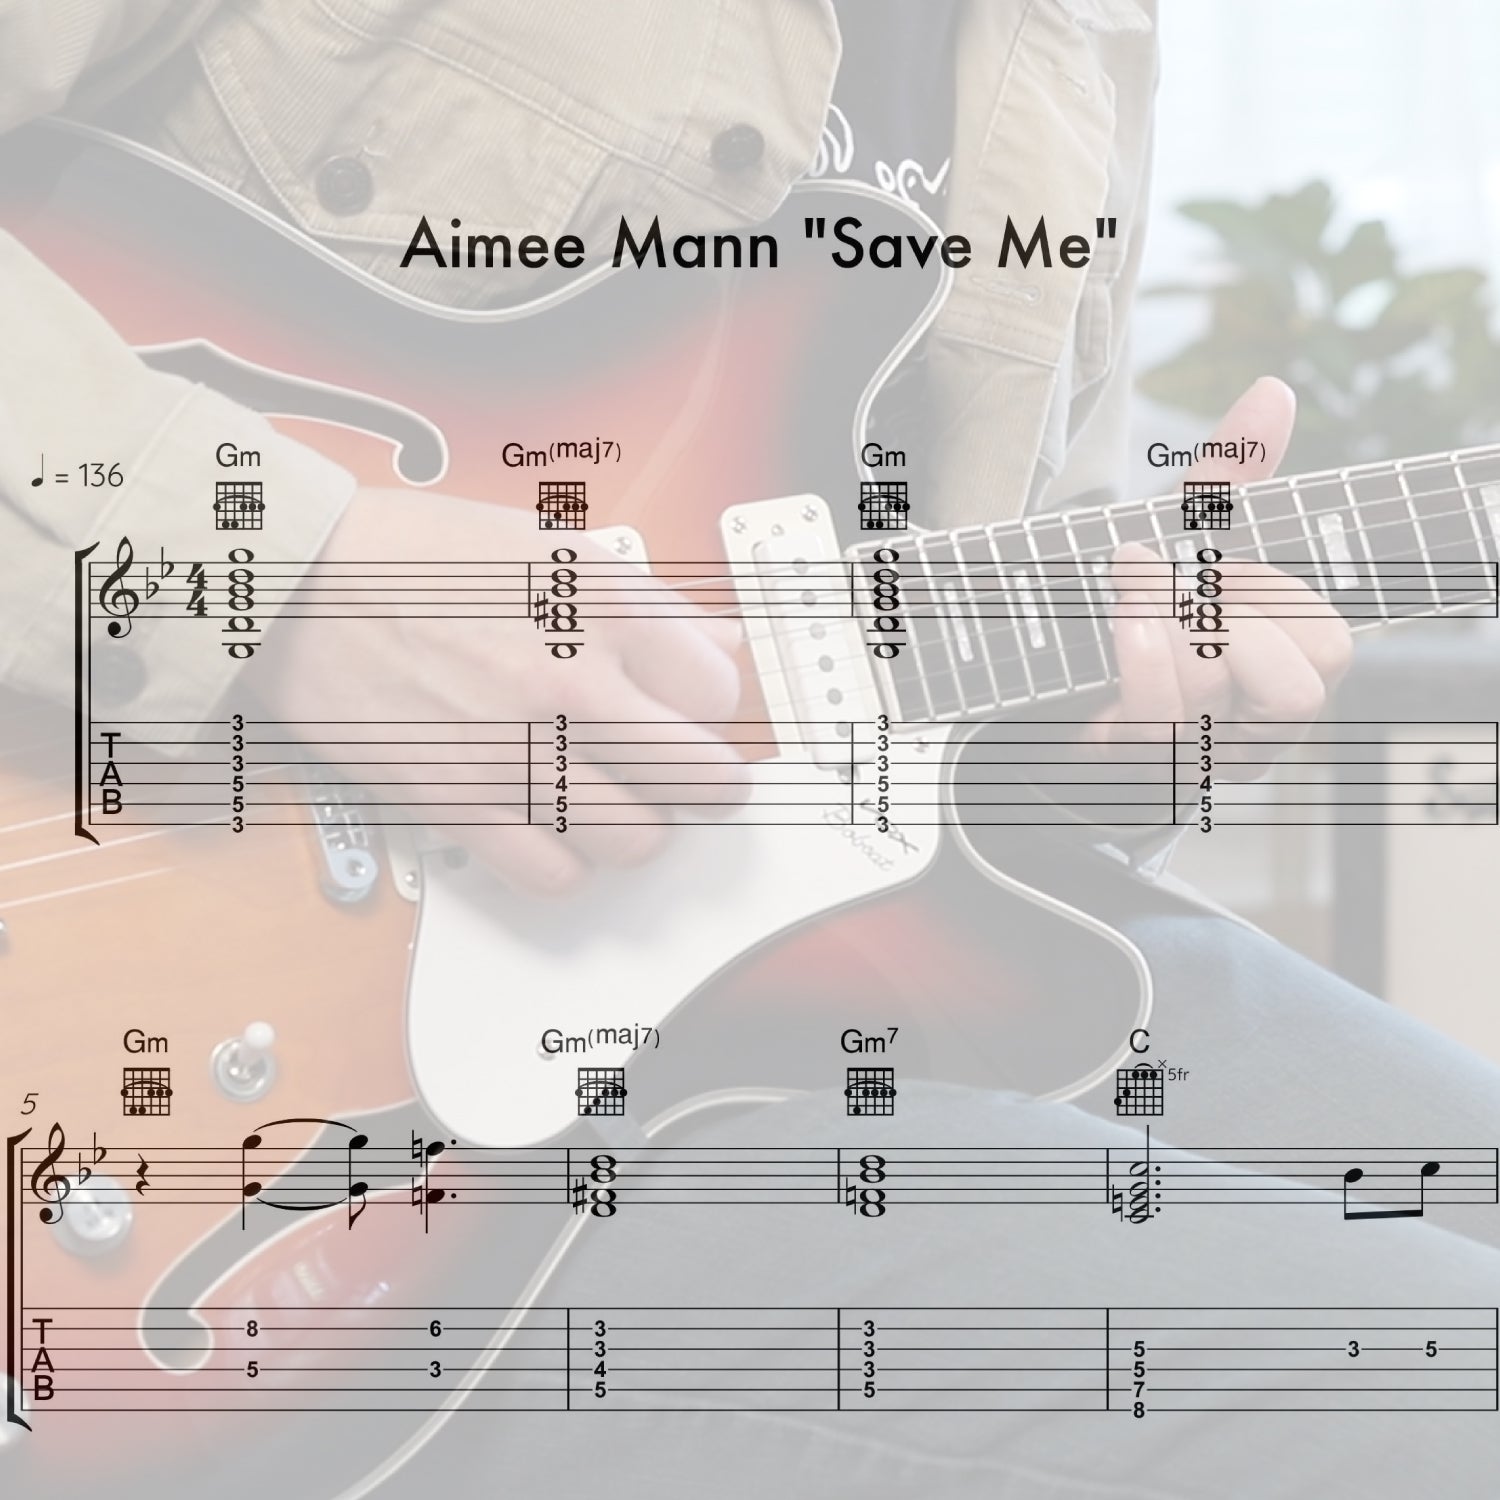 Aimee Mann "Save Me"